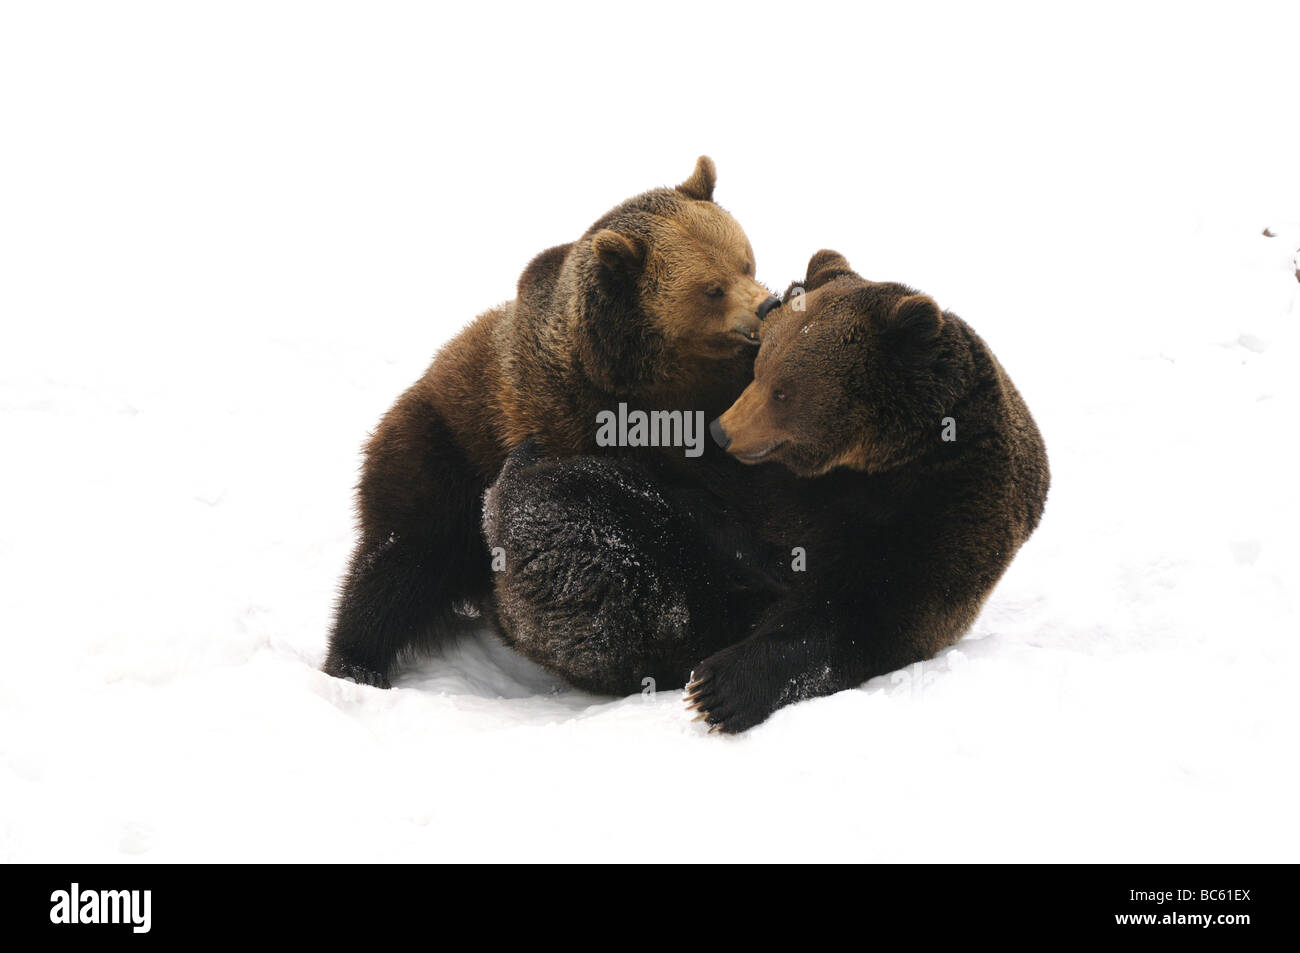 Zwei Braunbären (Ursus Arctos) spielen im Schnee, Nationalpark Bayerischer Wald, Bayern, Deutschland Stockfoto